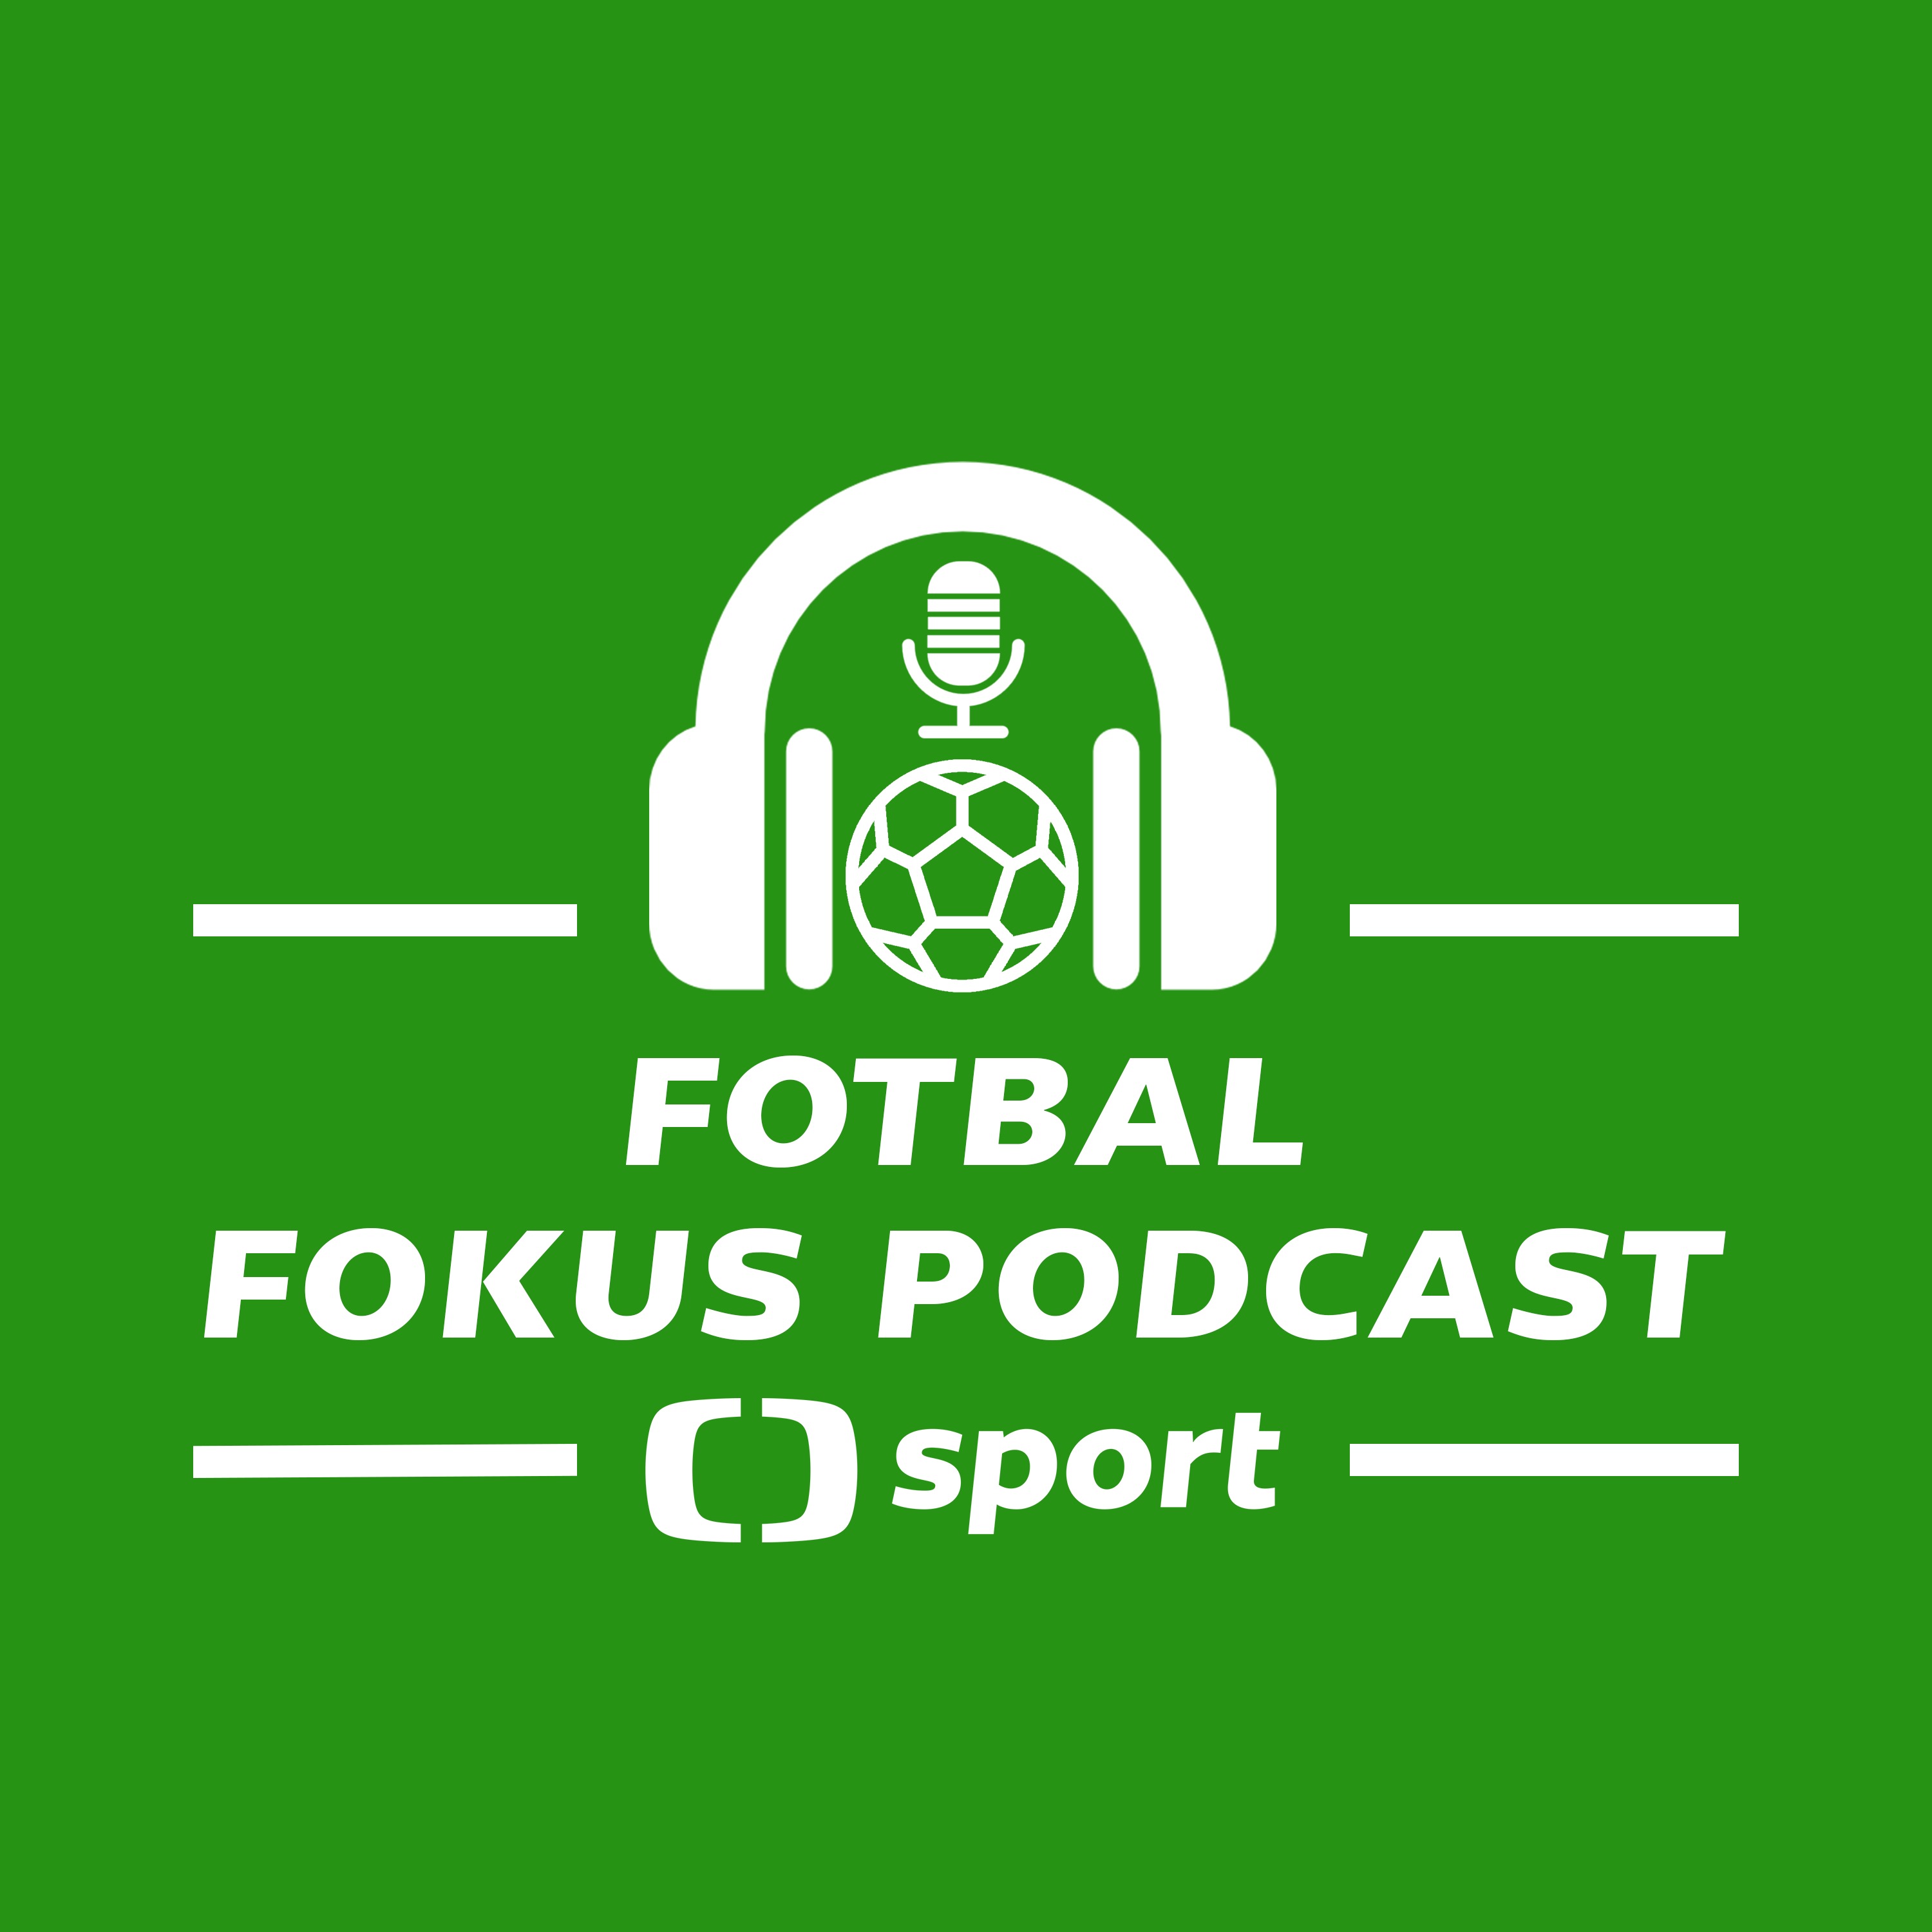 Fotbal fokus podcast: Řezník z Horní Břízy v akci, Lingr ve Feyenoordu, otazník nad Kuchtou